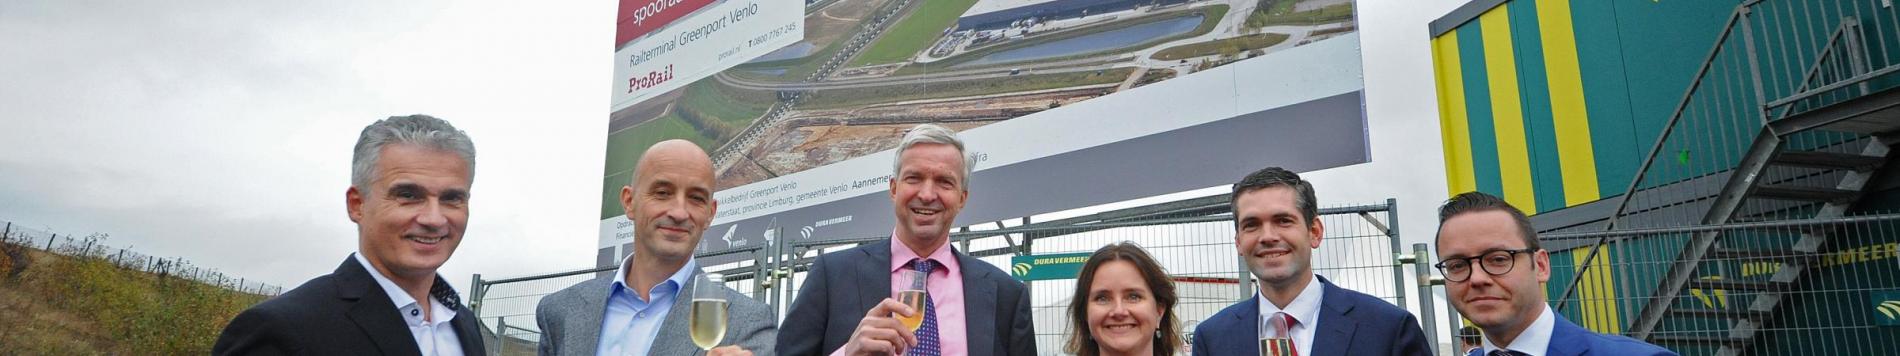 Aanleg nieuwe spooraansluiting Railterminal Greenport Venlo van start